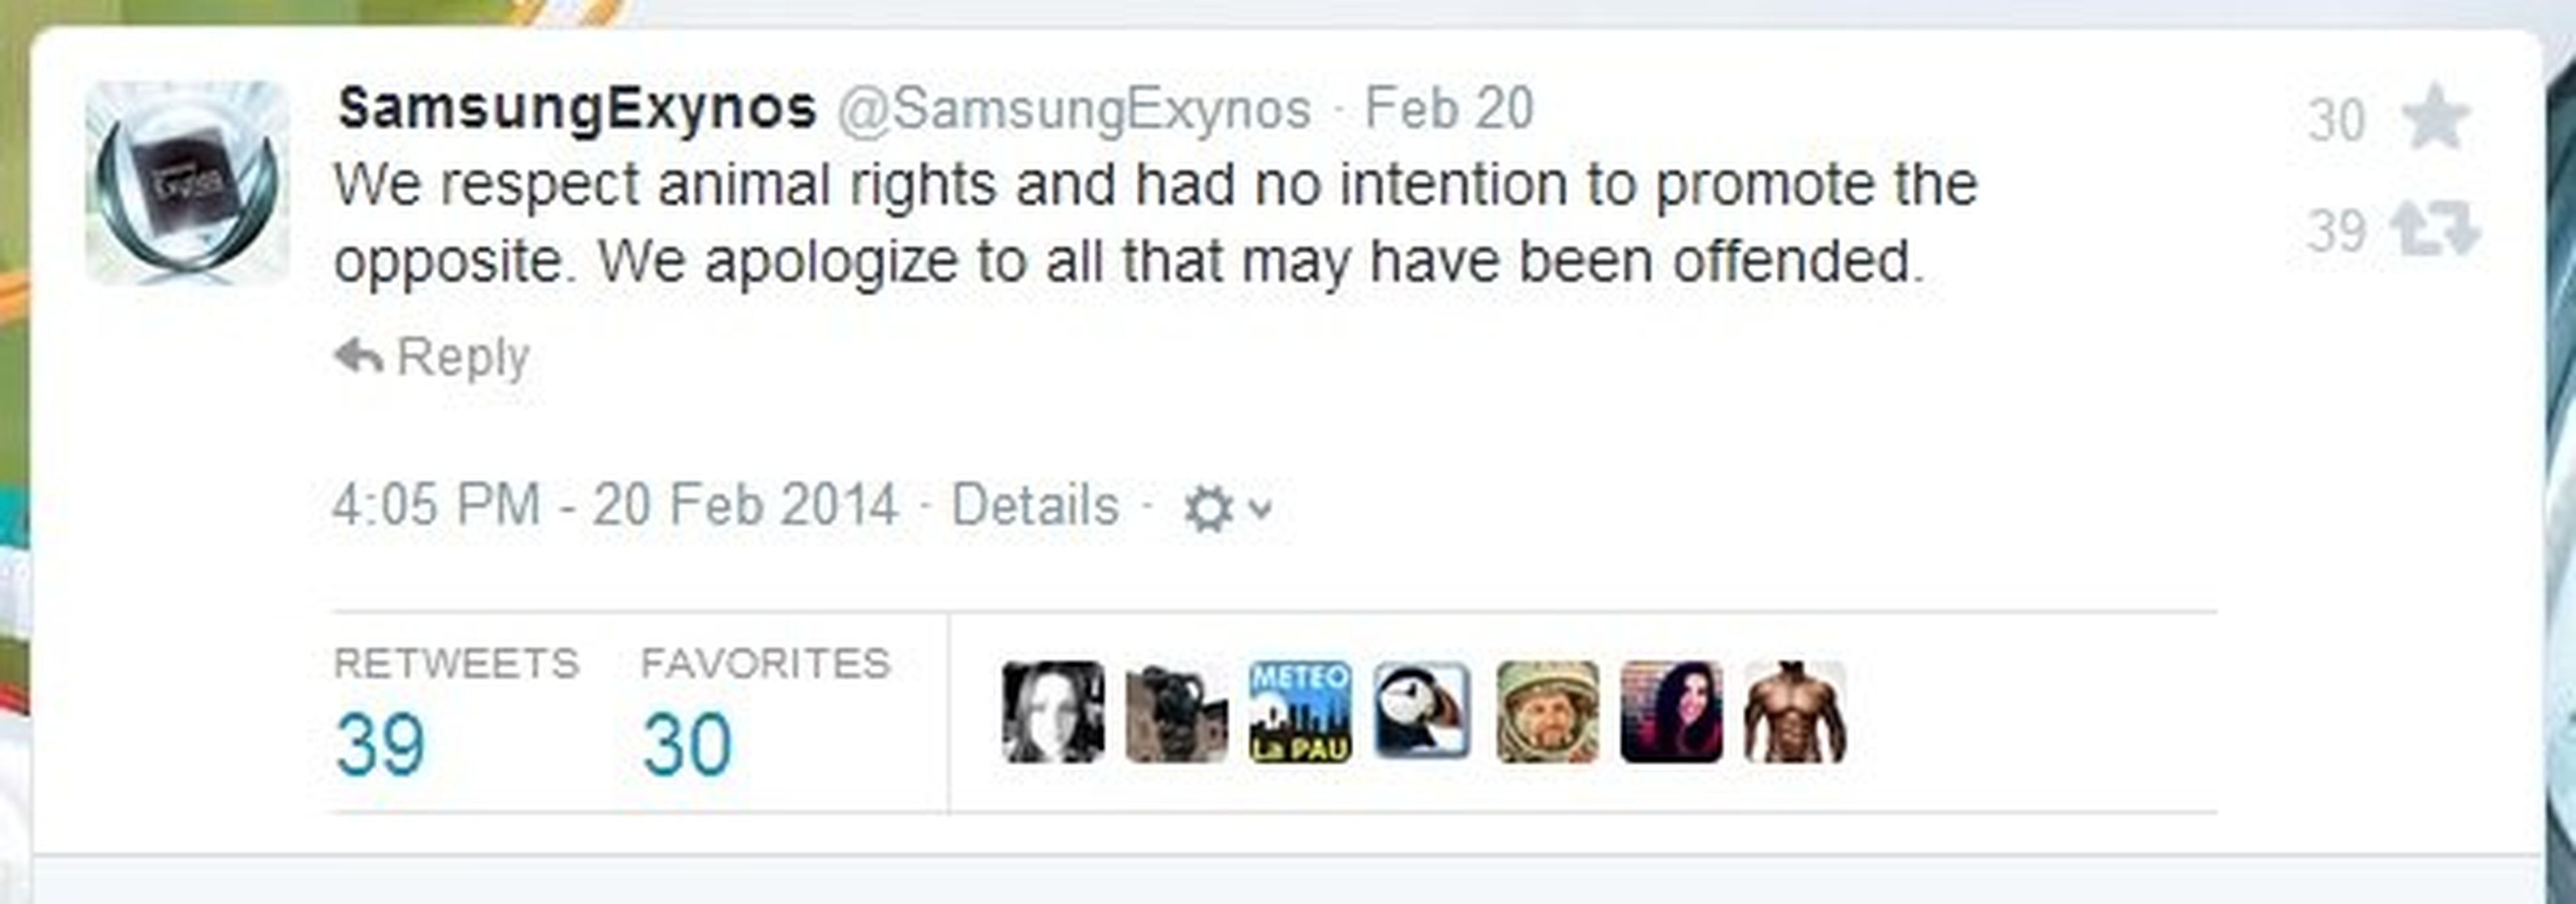 Samsung retira el cartel del Exynos por quejas antitaurinas